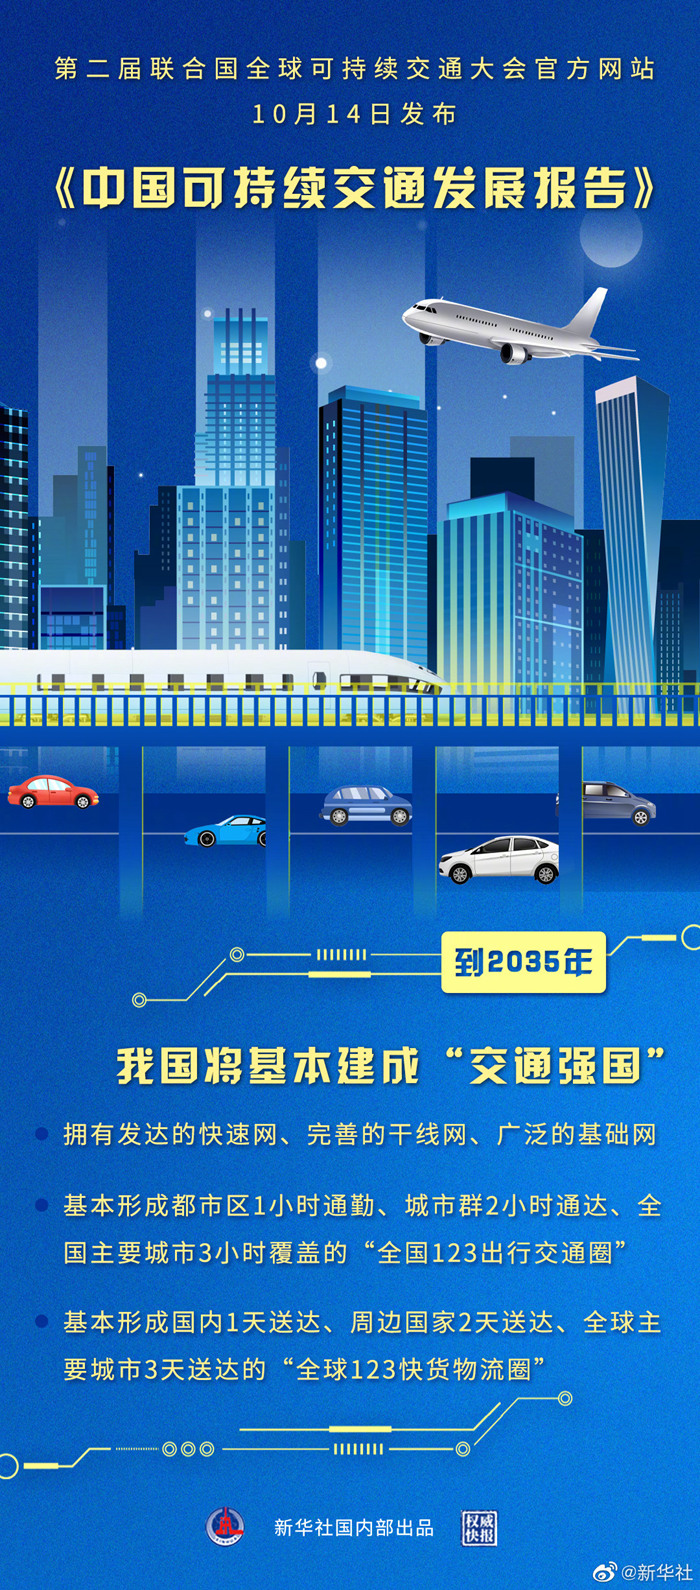 大会官方网站14日发布《中国可持续交通发展报告》
-卡塔尔空运